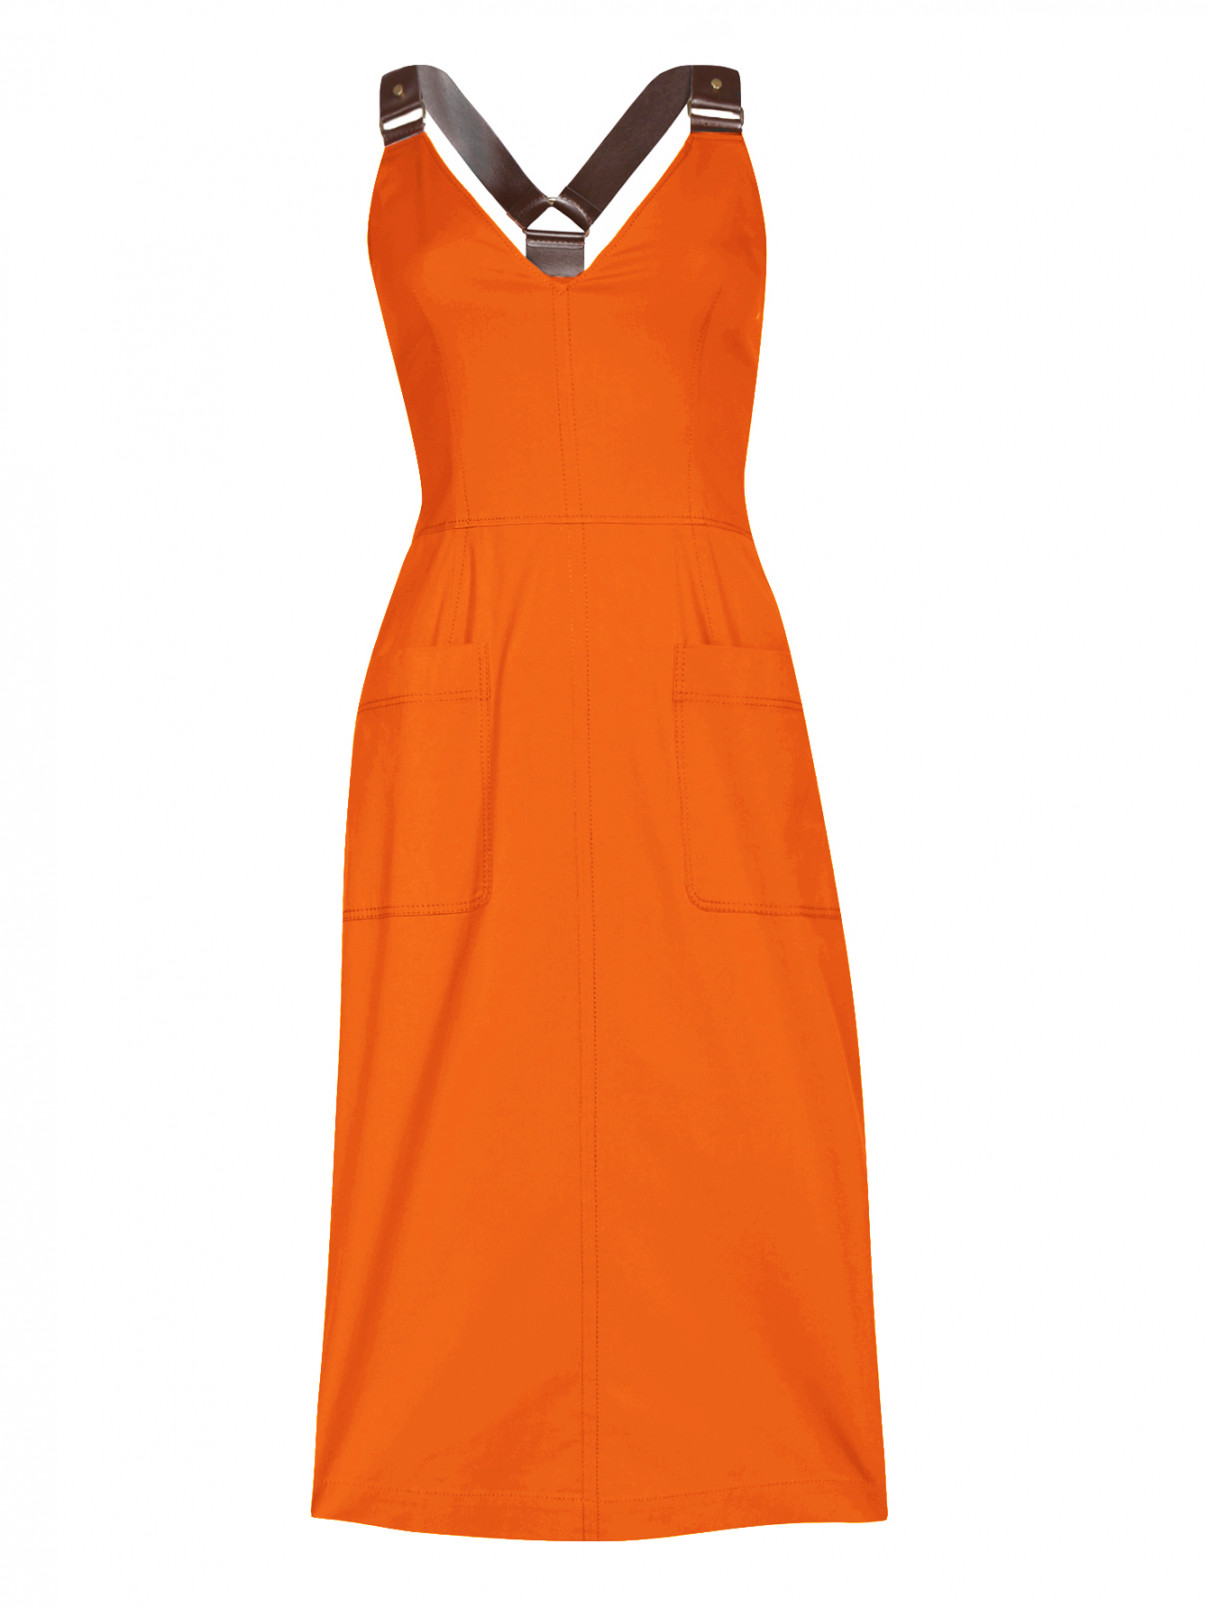 Платье-миди из хлопка с накладными карманами Alberta Ferretti  –  Общий вид  – Цвет:  Оранжевый